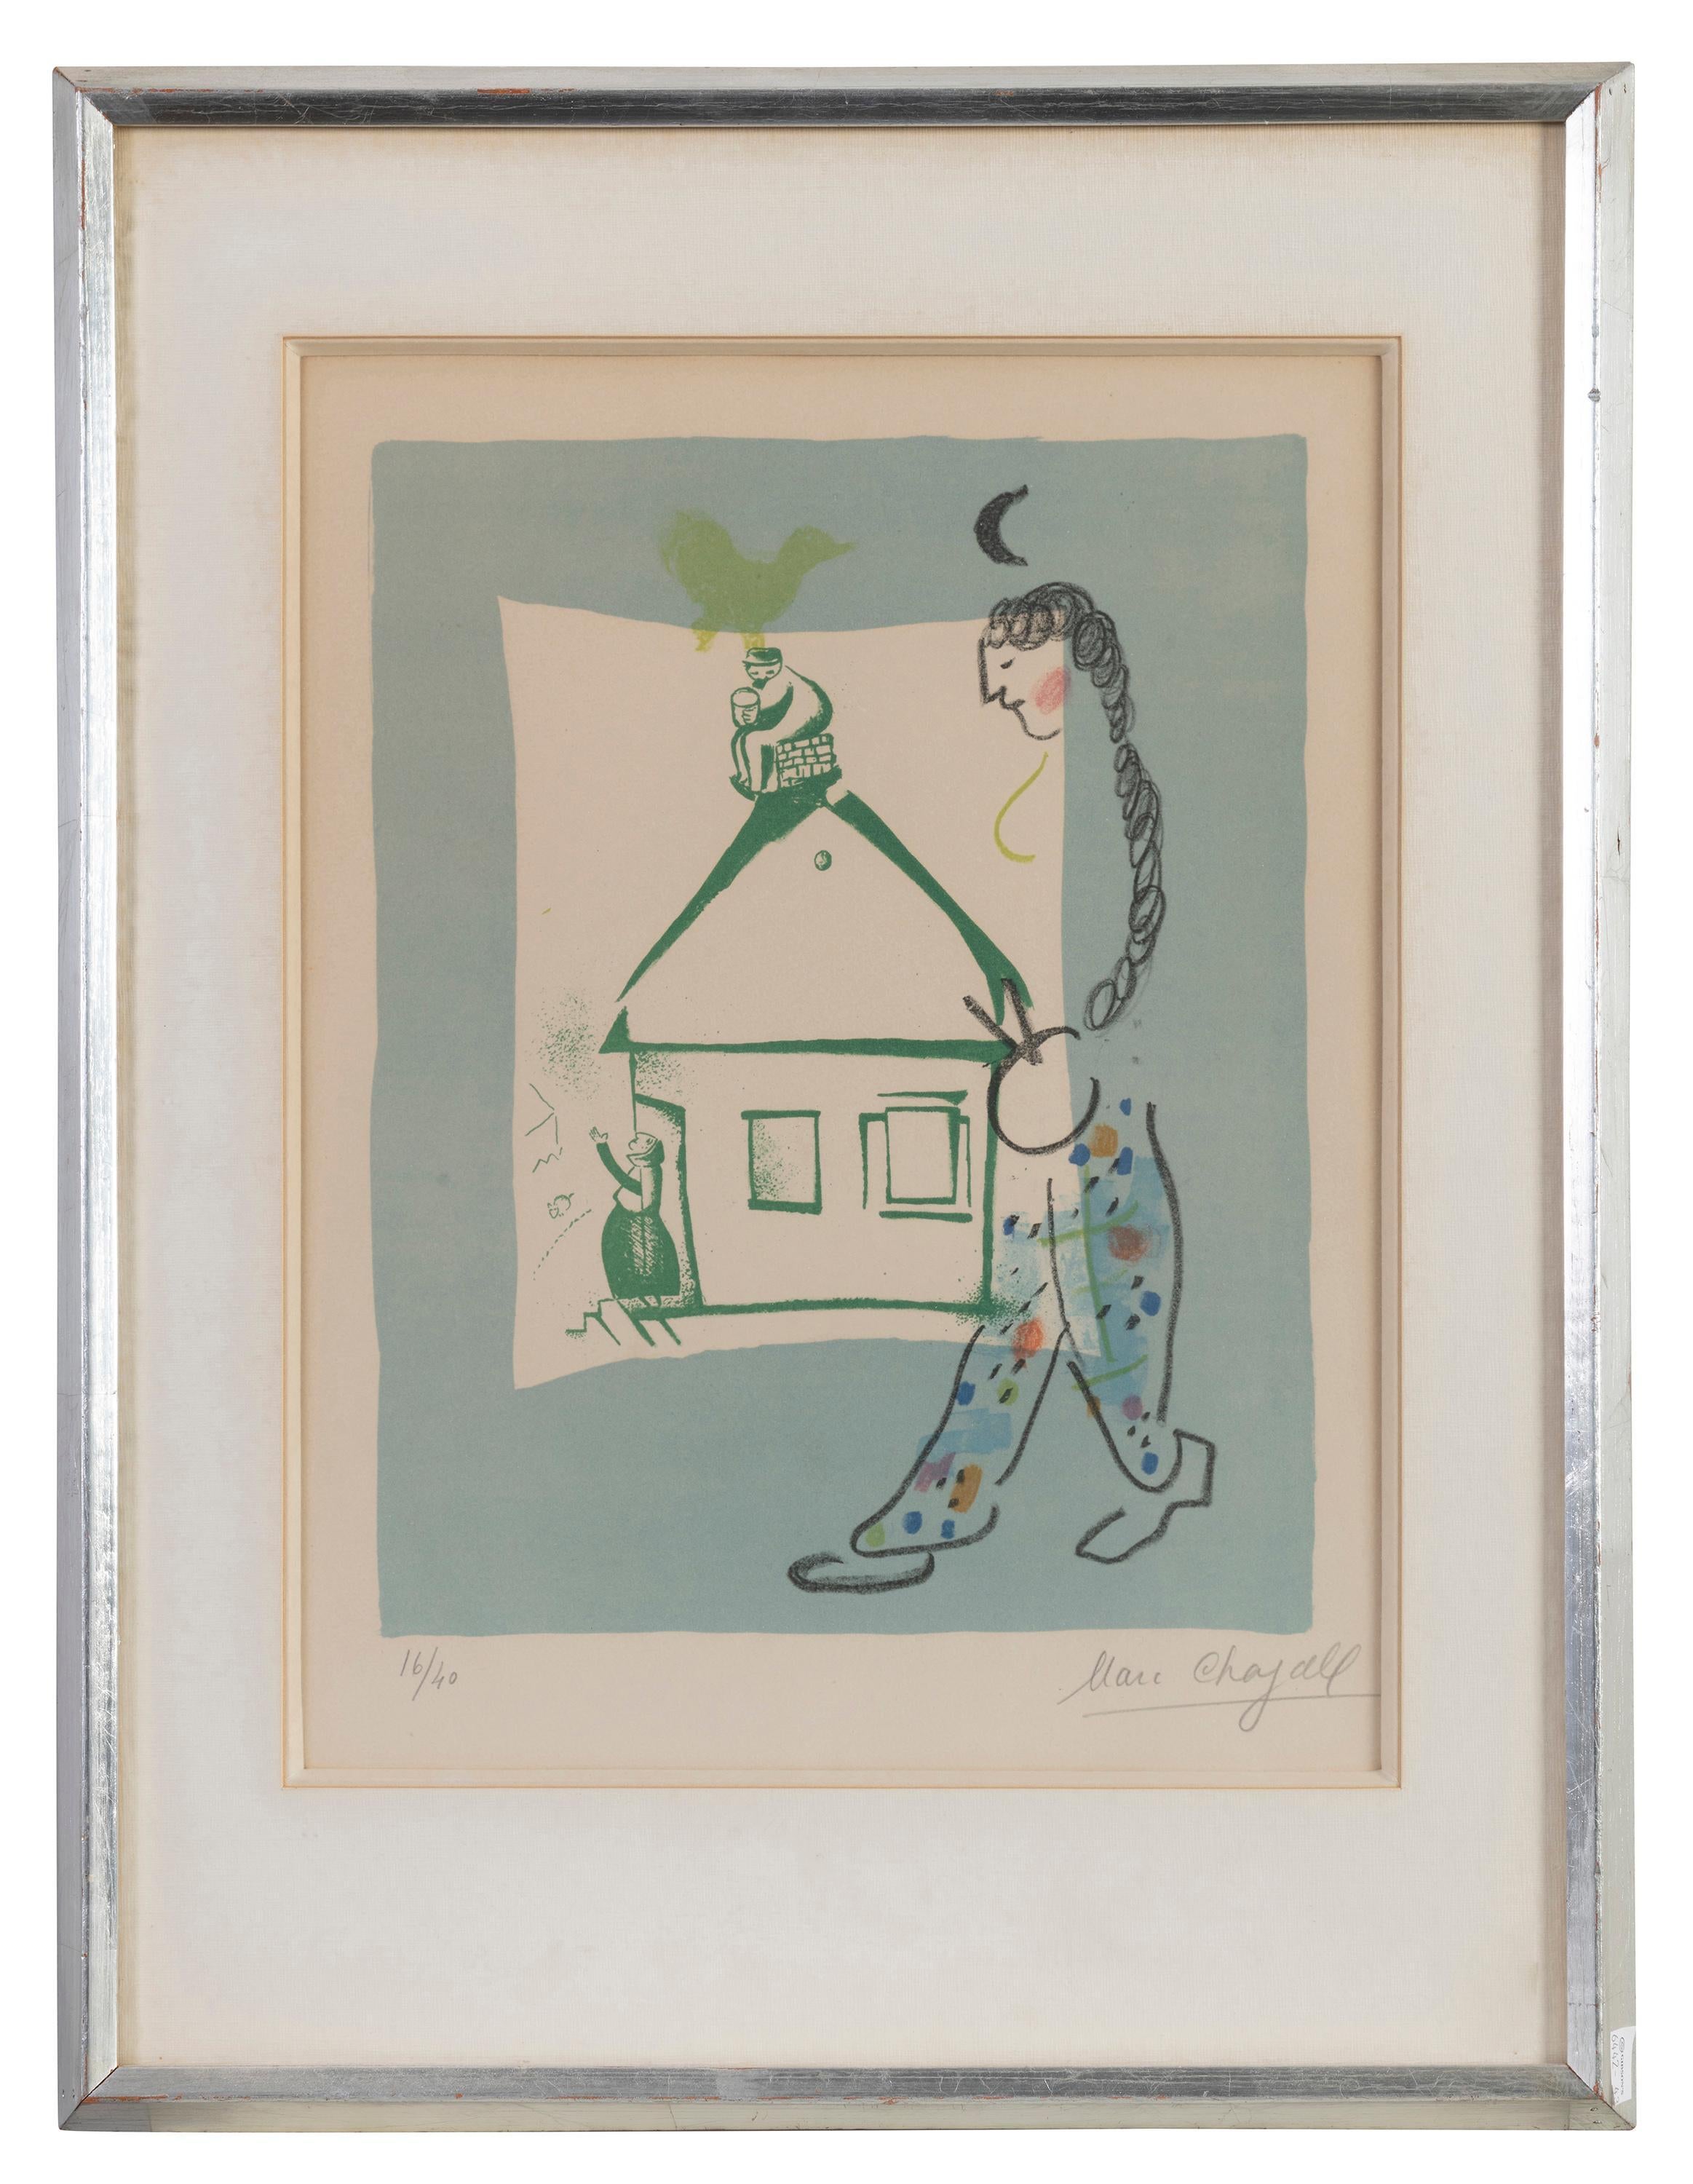 Marc Chagall 
La maison de mon village, 1960
Lithographie
Signé à la main en bas à droite
Edition 16/40 en bas à gauche
Dimensions du cadre 56 x 42,5 x 3 cm
Taille de l'image 32 × 25,5 cm
Cadre inclus

Référence Mourlot  283

Quelques taches sur le